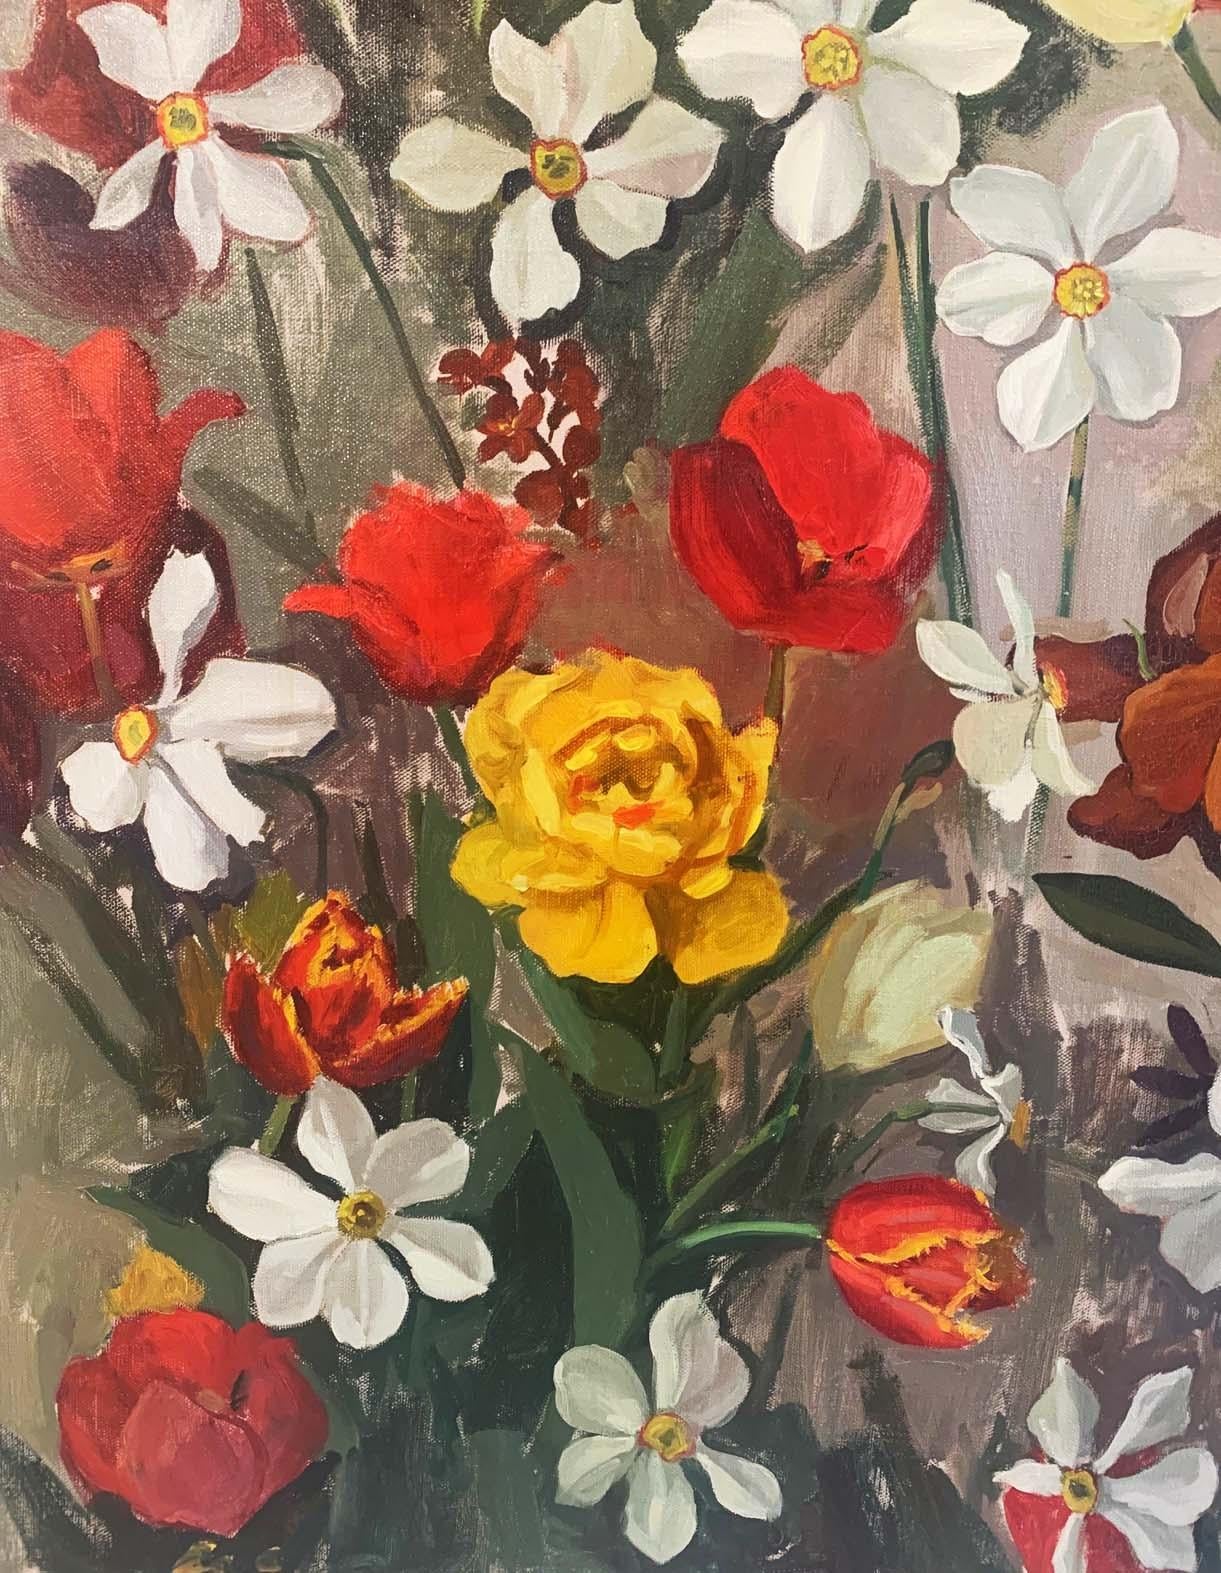 Flowers - Contemporary Painting by Alina Sharovskaya